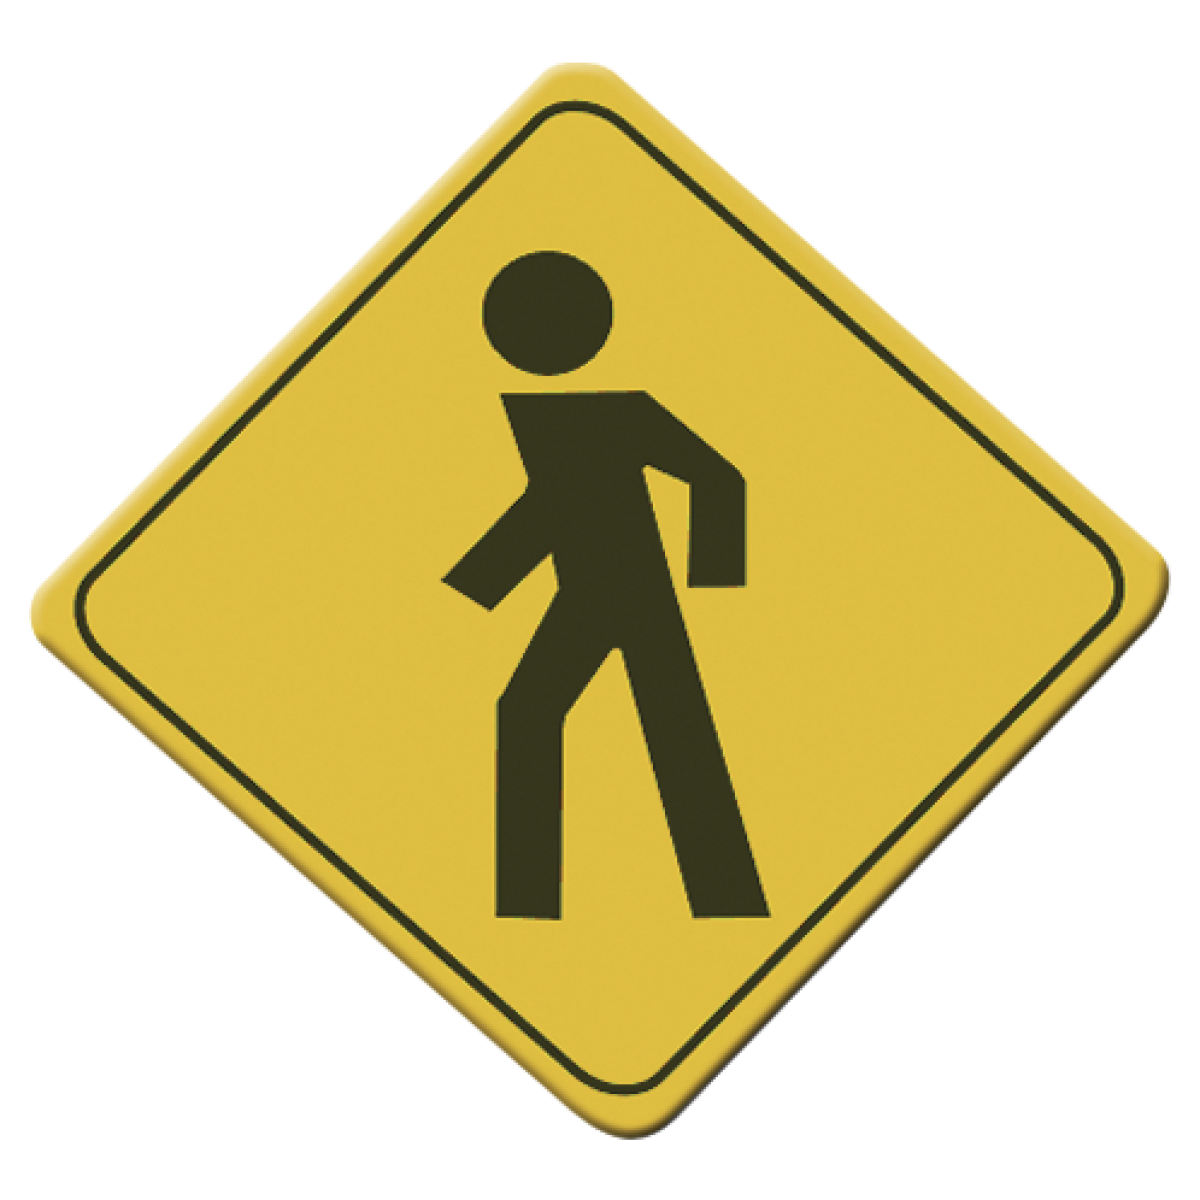 El Paso peatonal señal es imprescindible para marcar cruces seguros en las calles. Indica a la distancia la presencia de peatones a los automovilistas